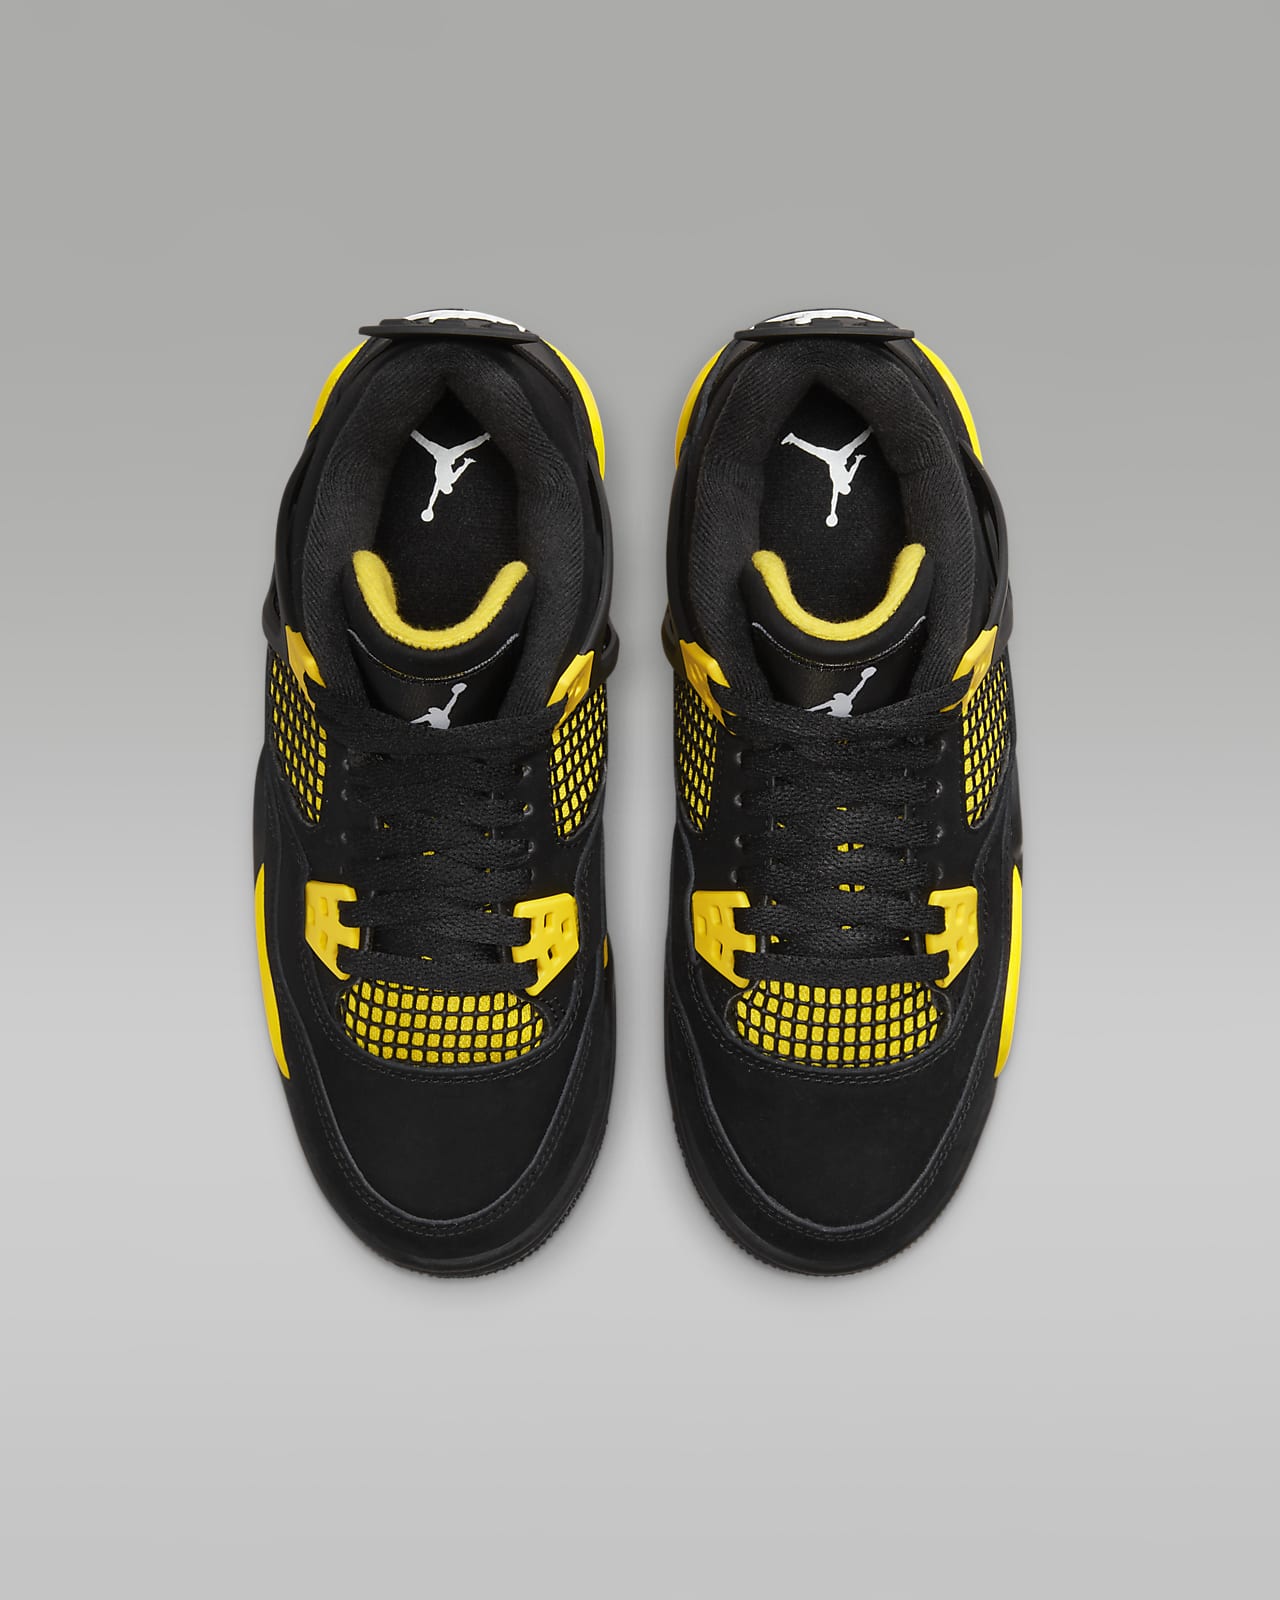 Nike Air Force 1 Low Thunder Black Tour Yellow Swoosh AJ 4 Retro All Sizes